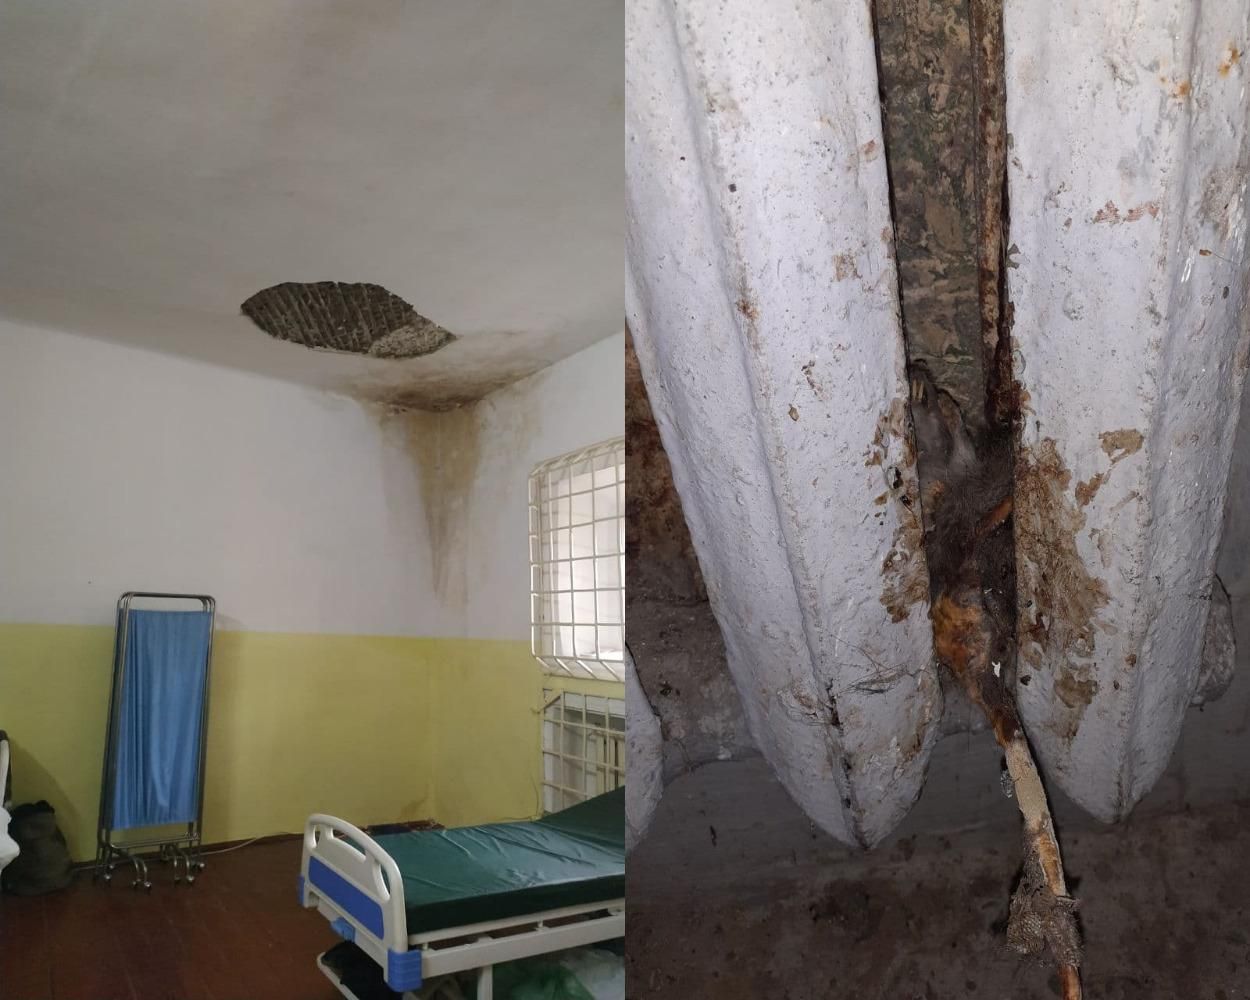 Мертвые крысы и мокрые стены: в офисе омбудсмена ужаснулись условиями во львовской тюрьме